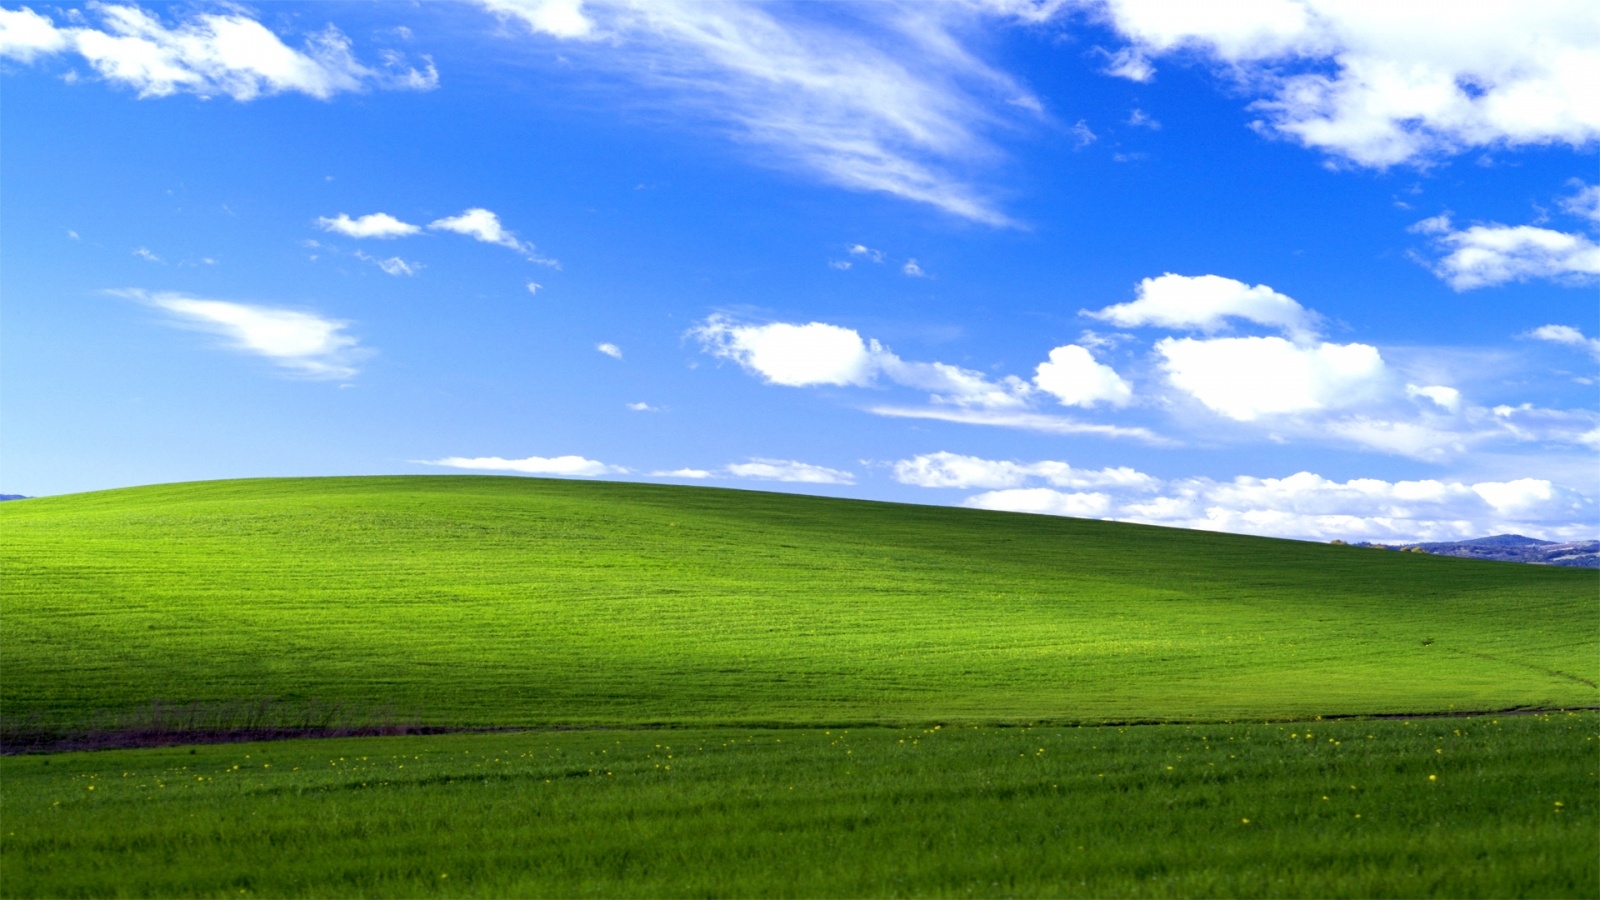 Tác giả ảnh nền Windows XP đã có thể thành triệu phú nhờ phí bản quyền